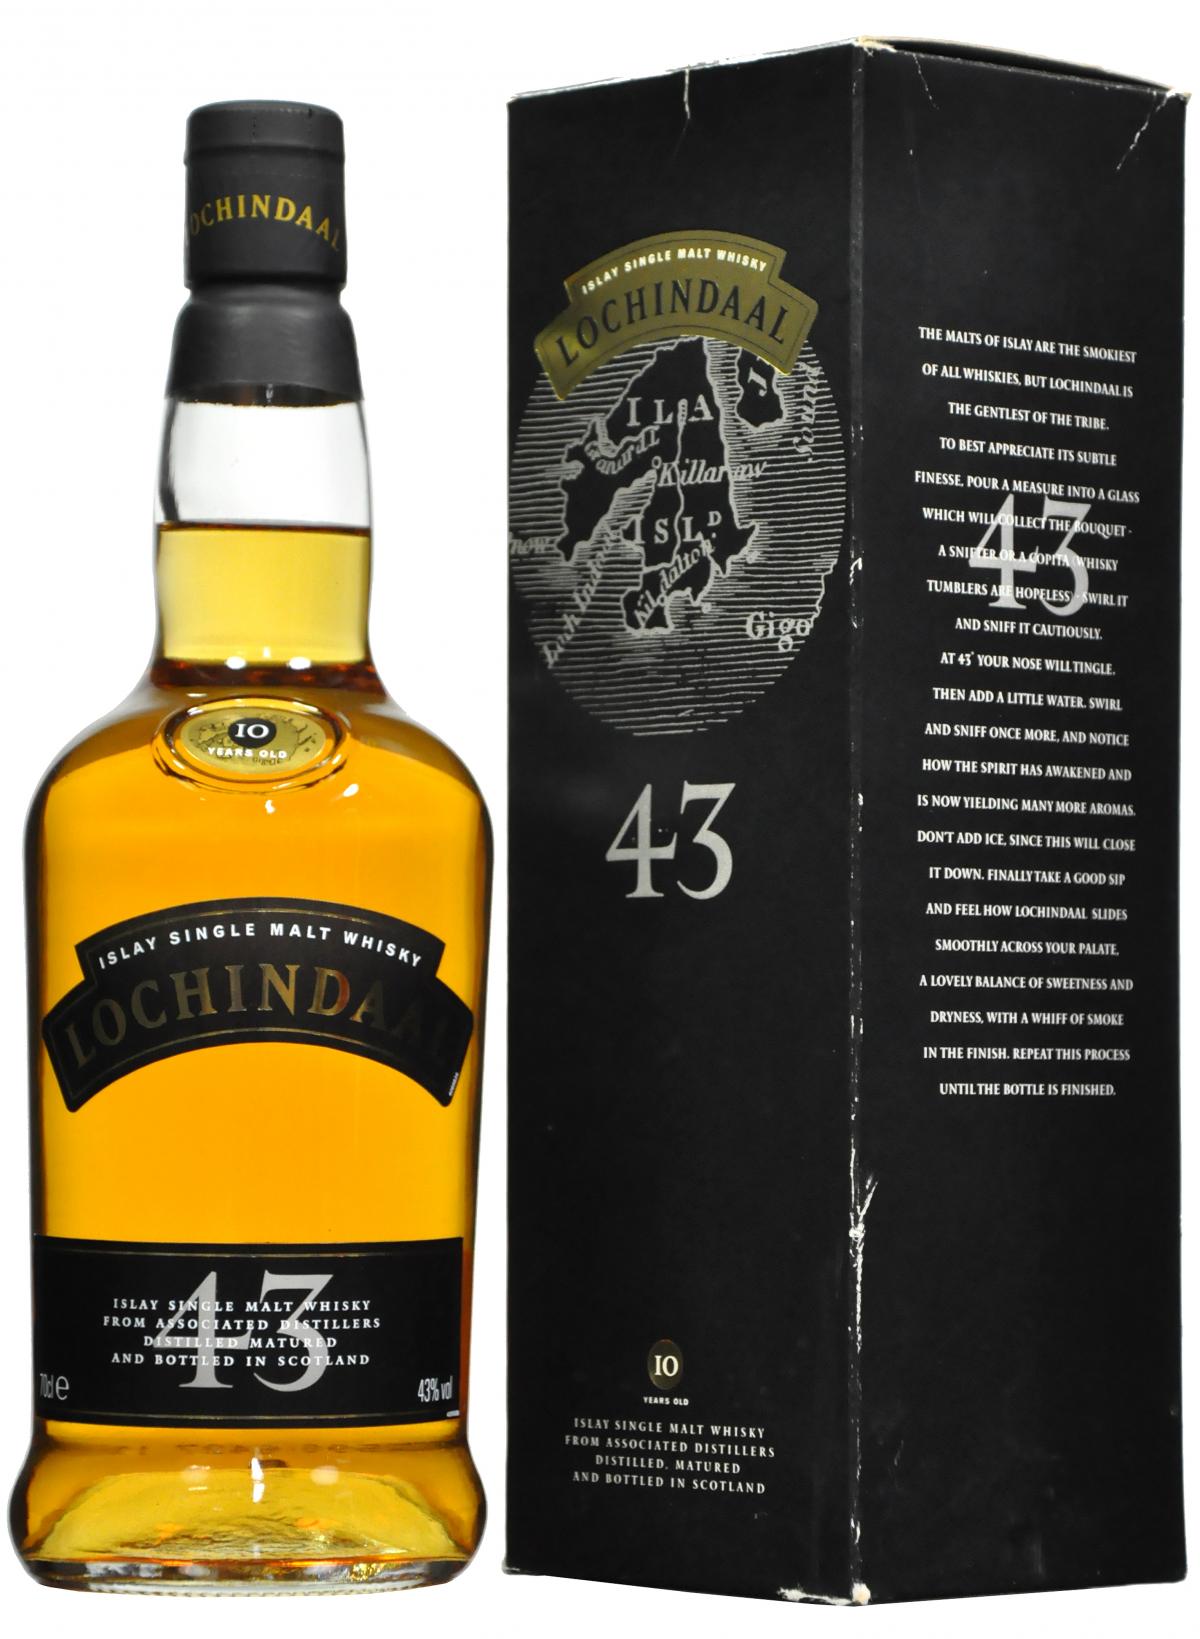 lochindaal 43, bruichladdich 10 year old islay single malt scotch whisky